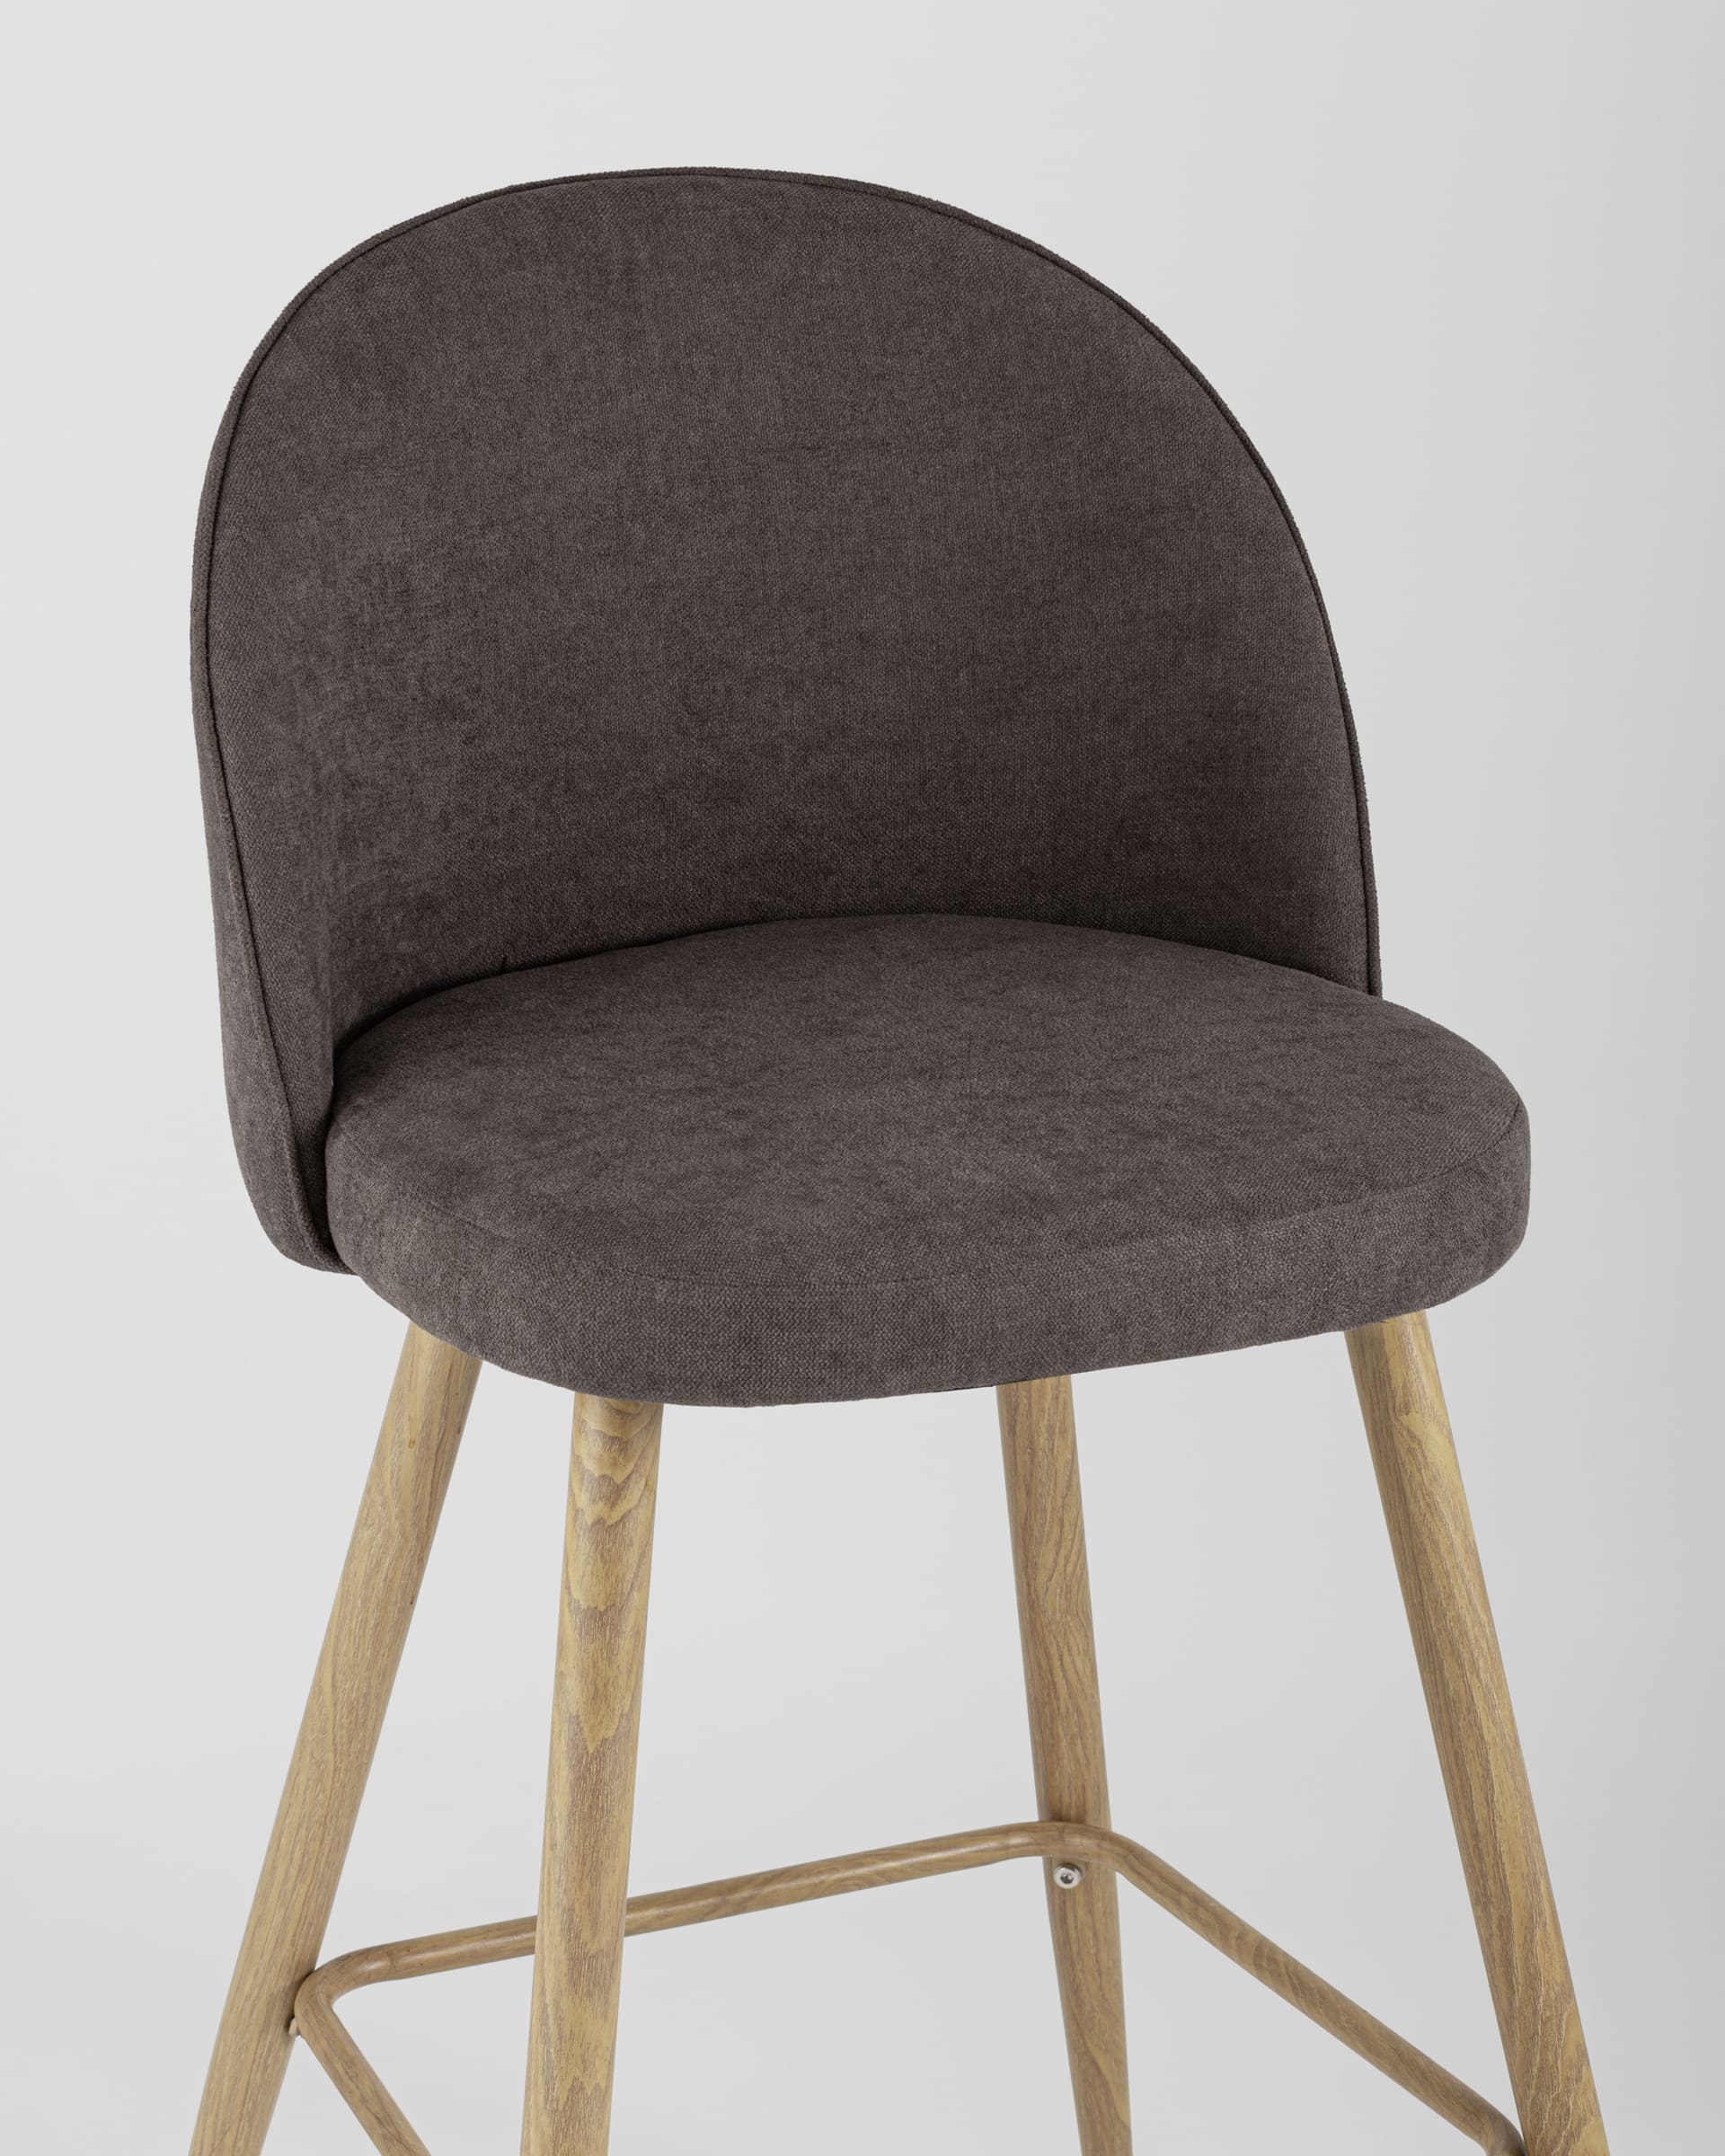 Барный стул Лион обивка шенилл коричневая, ножки металлические в цвет светлого дерева